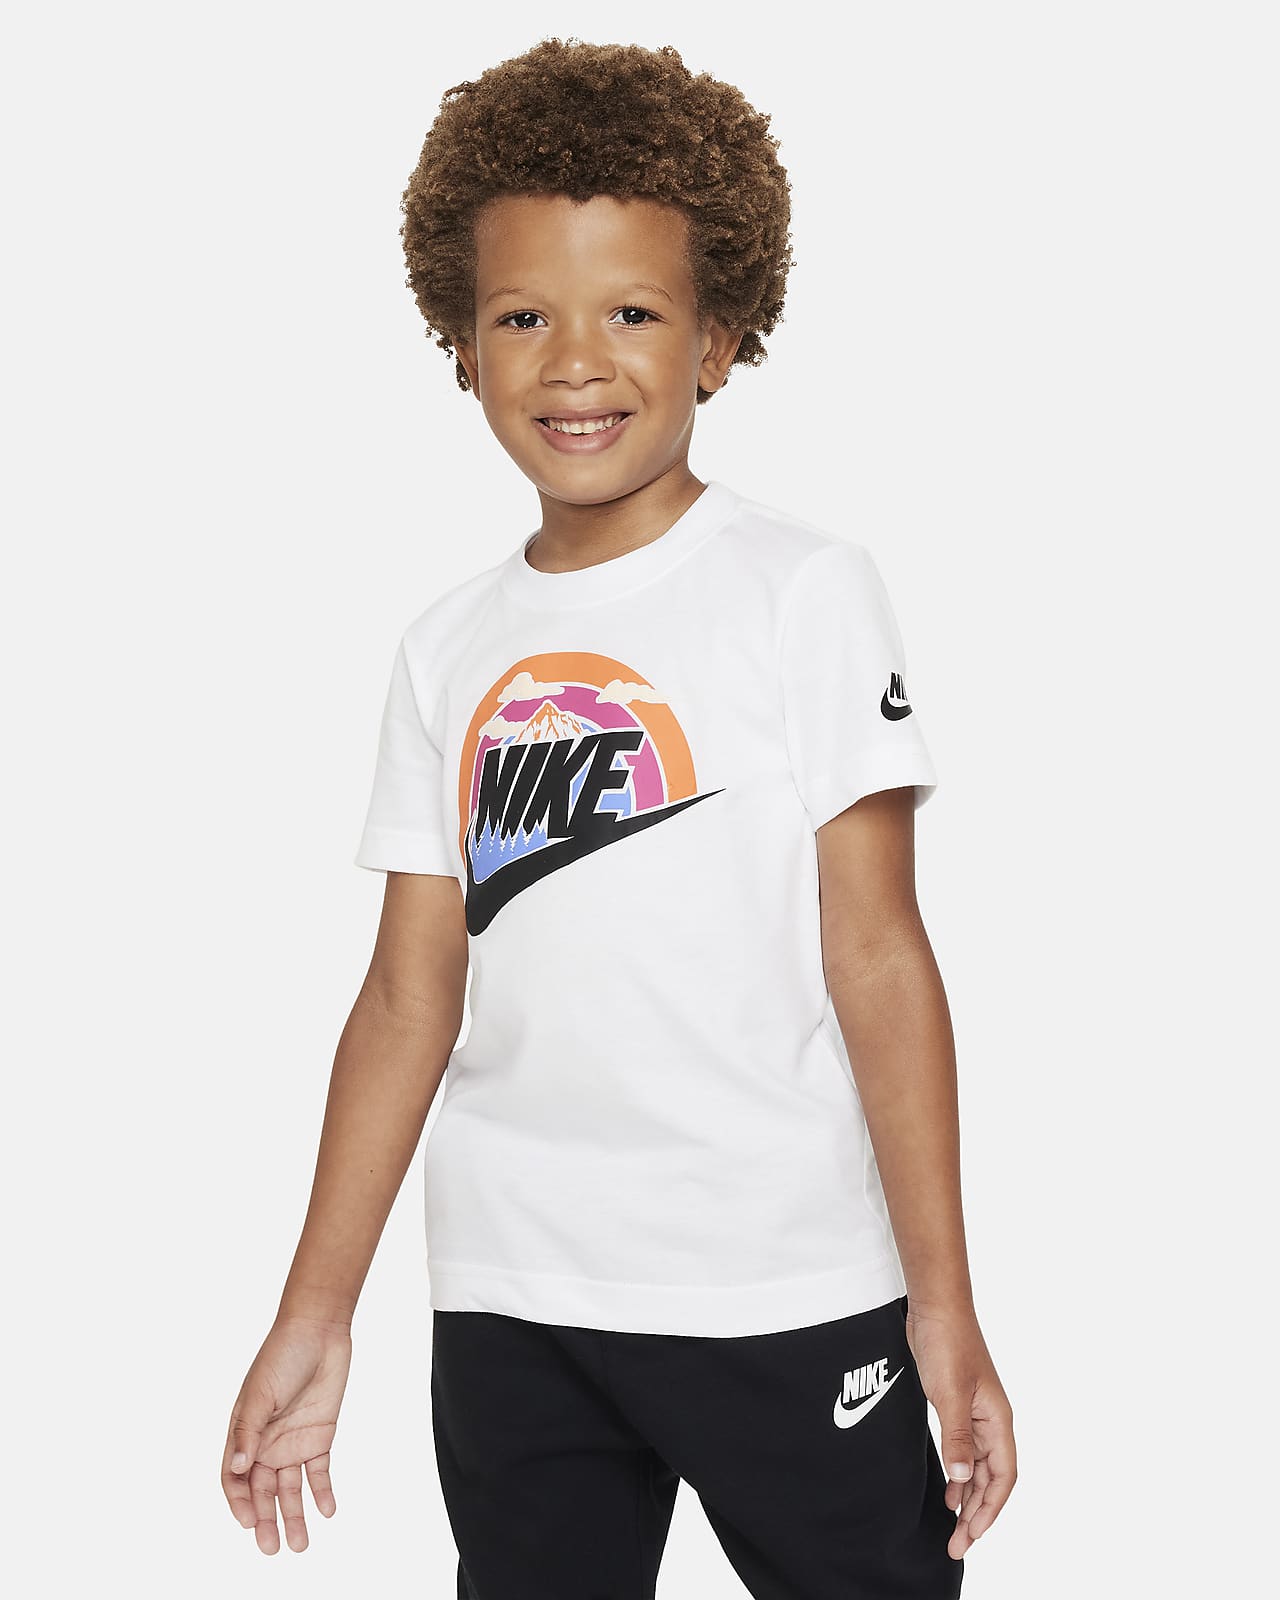 Nike Little T-Shirt. Wilderness Tee Futura Kids